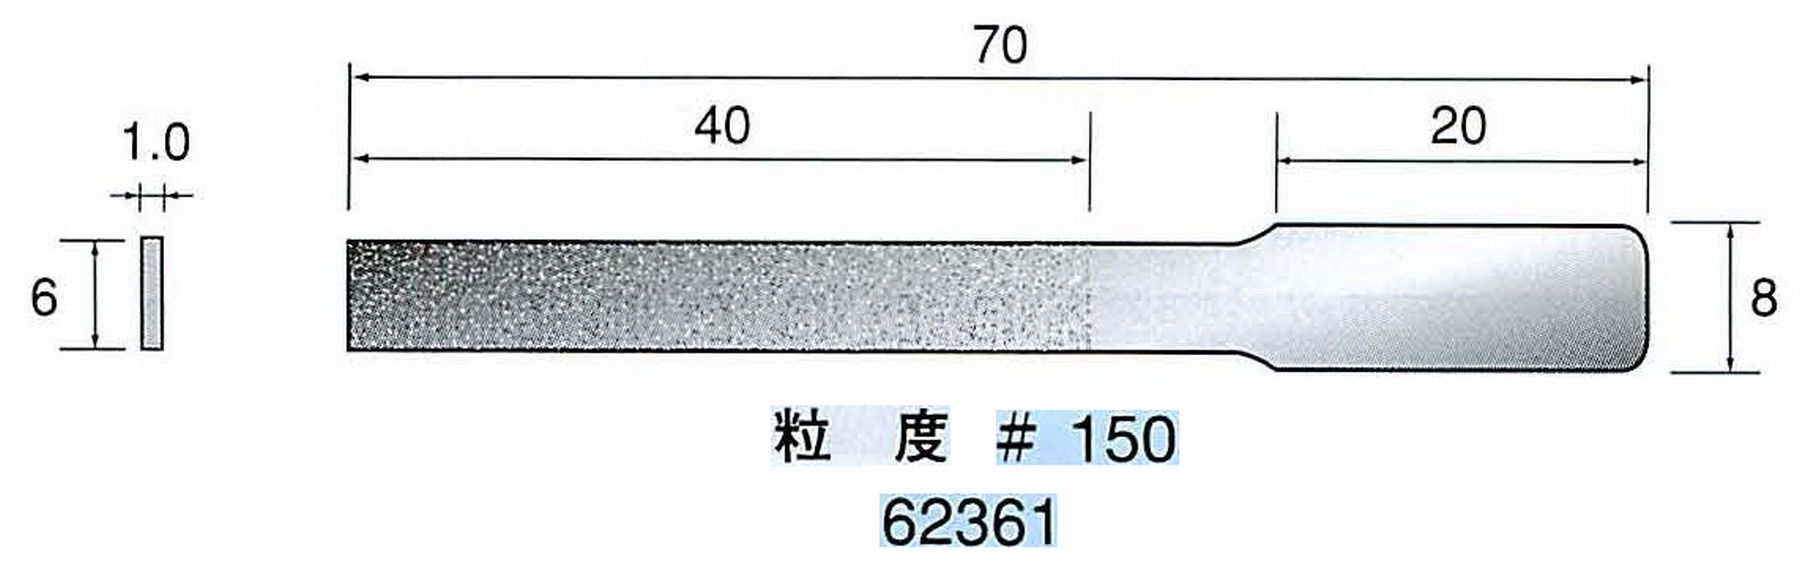 ナカニシ/NAKANISHI ハンディタイプ 電動・エアーヤスリ(往復動) ラスター専用工具 ダイヤモンドヤスリフラットタイプ 62361